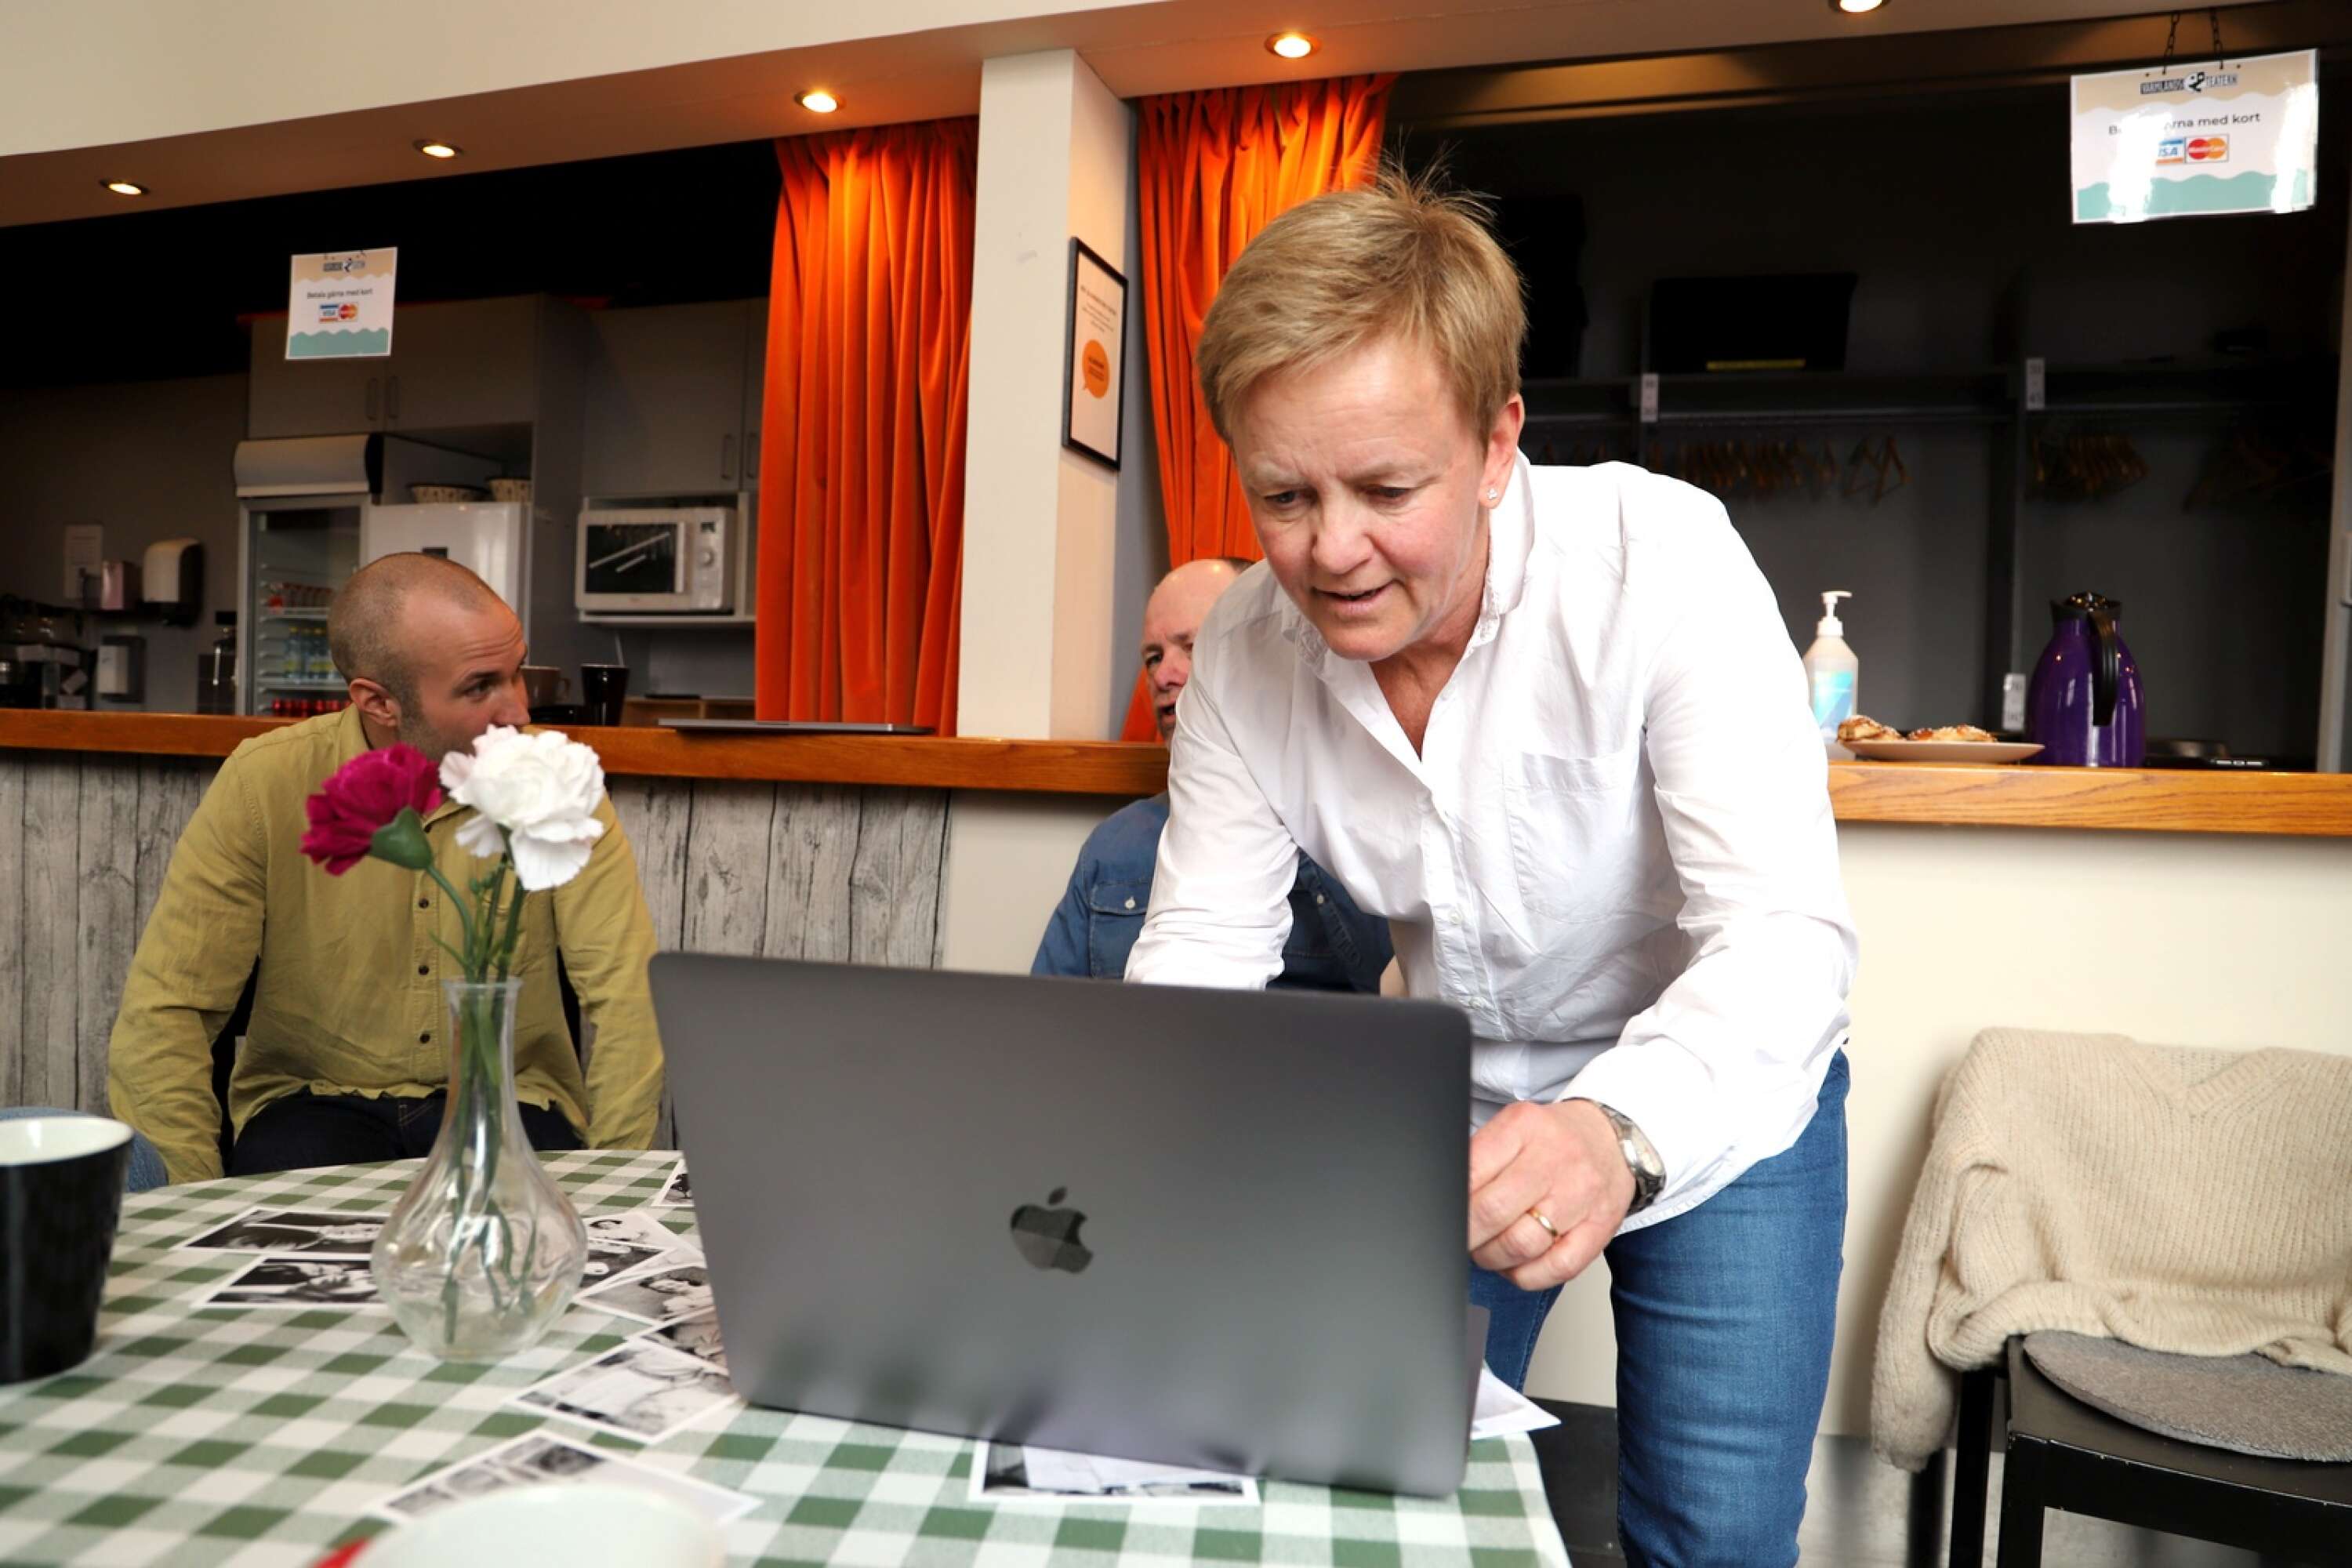 Anett Refseth kör igång datorn för att visa hemsidan som de skapat för crowdfunding och information kring projektet. Målet är att ta Café Berlin till både Karlstad och London.